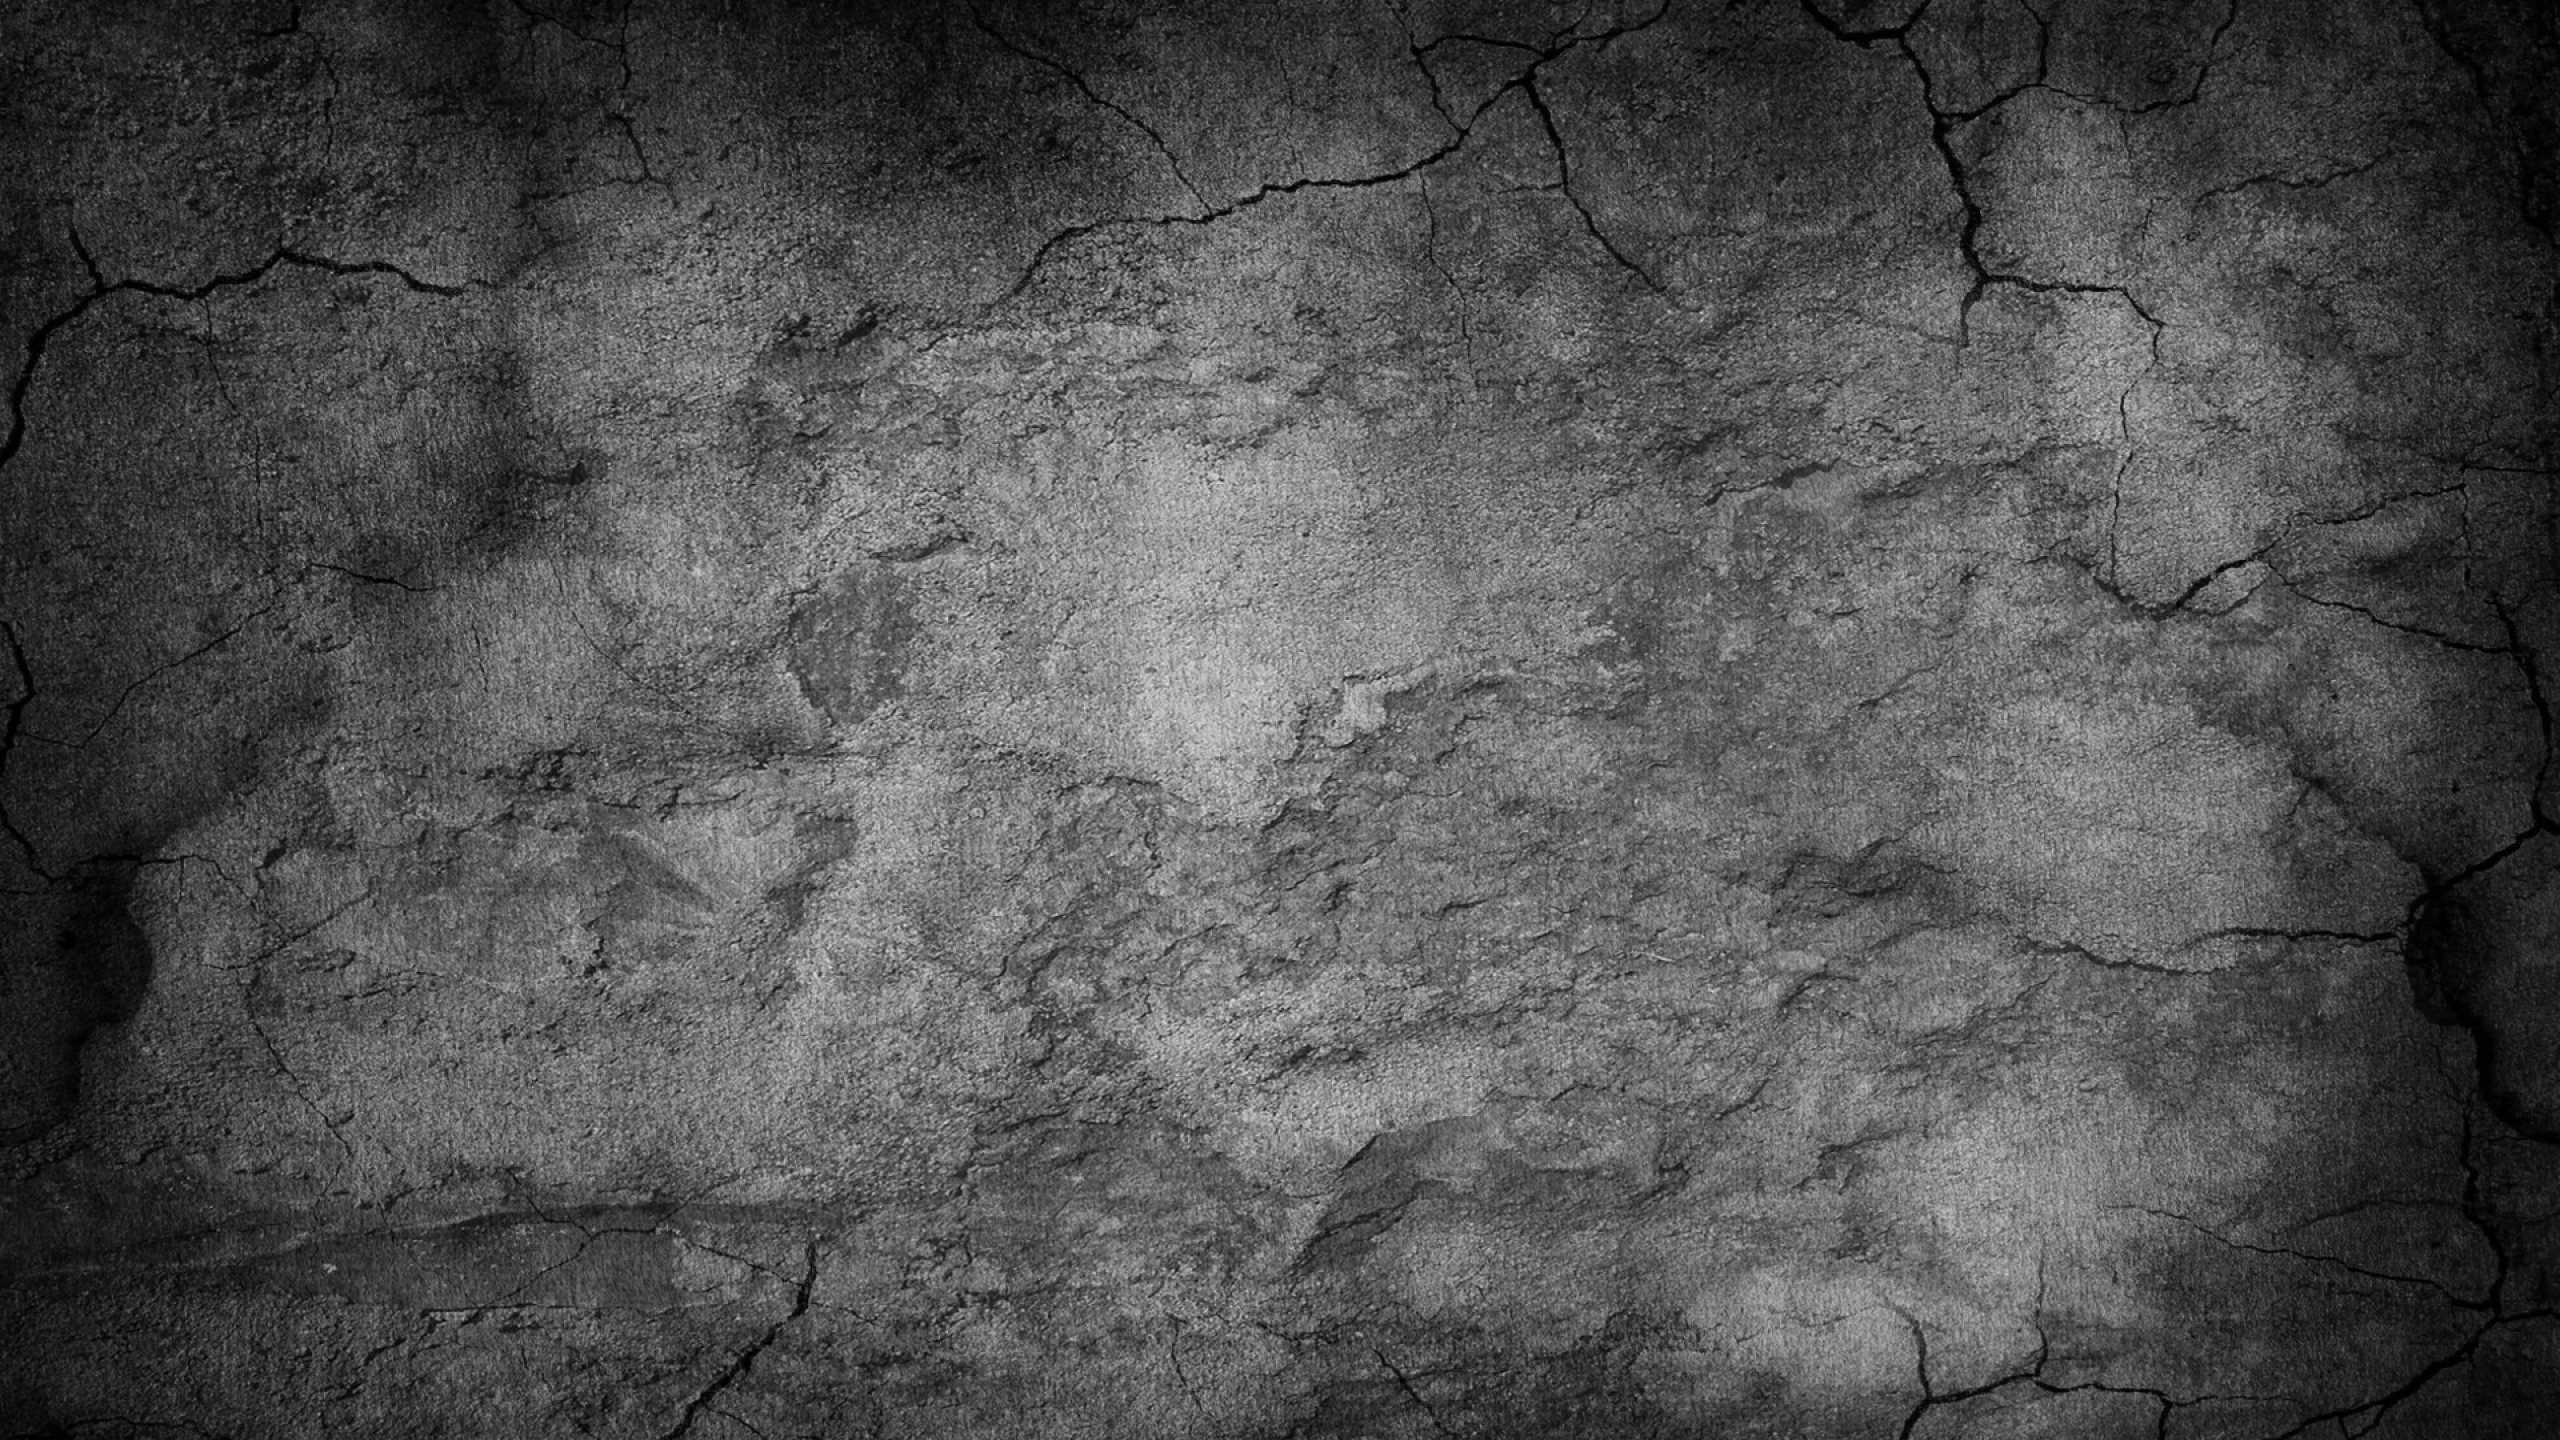 schwarze steintapete,schwarz,wand,schwarz und weiß,monochrome fotografie,text